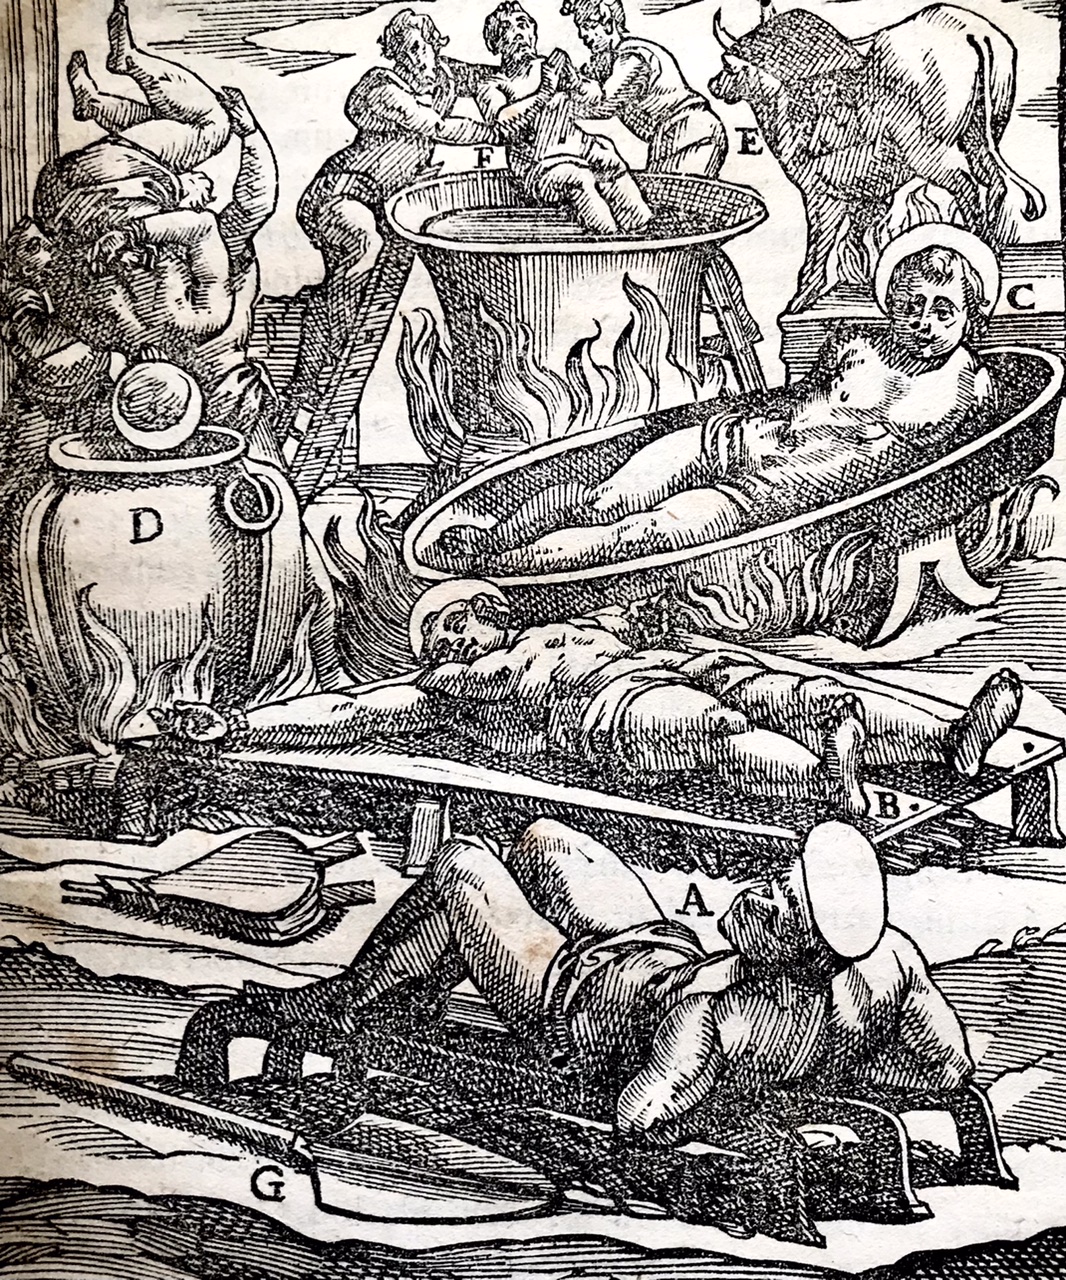 De SS. Martyrum Cruciatibus, Torture of Christian Martyrs by Antonio Gallonio